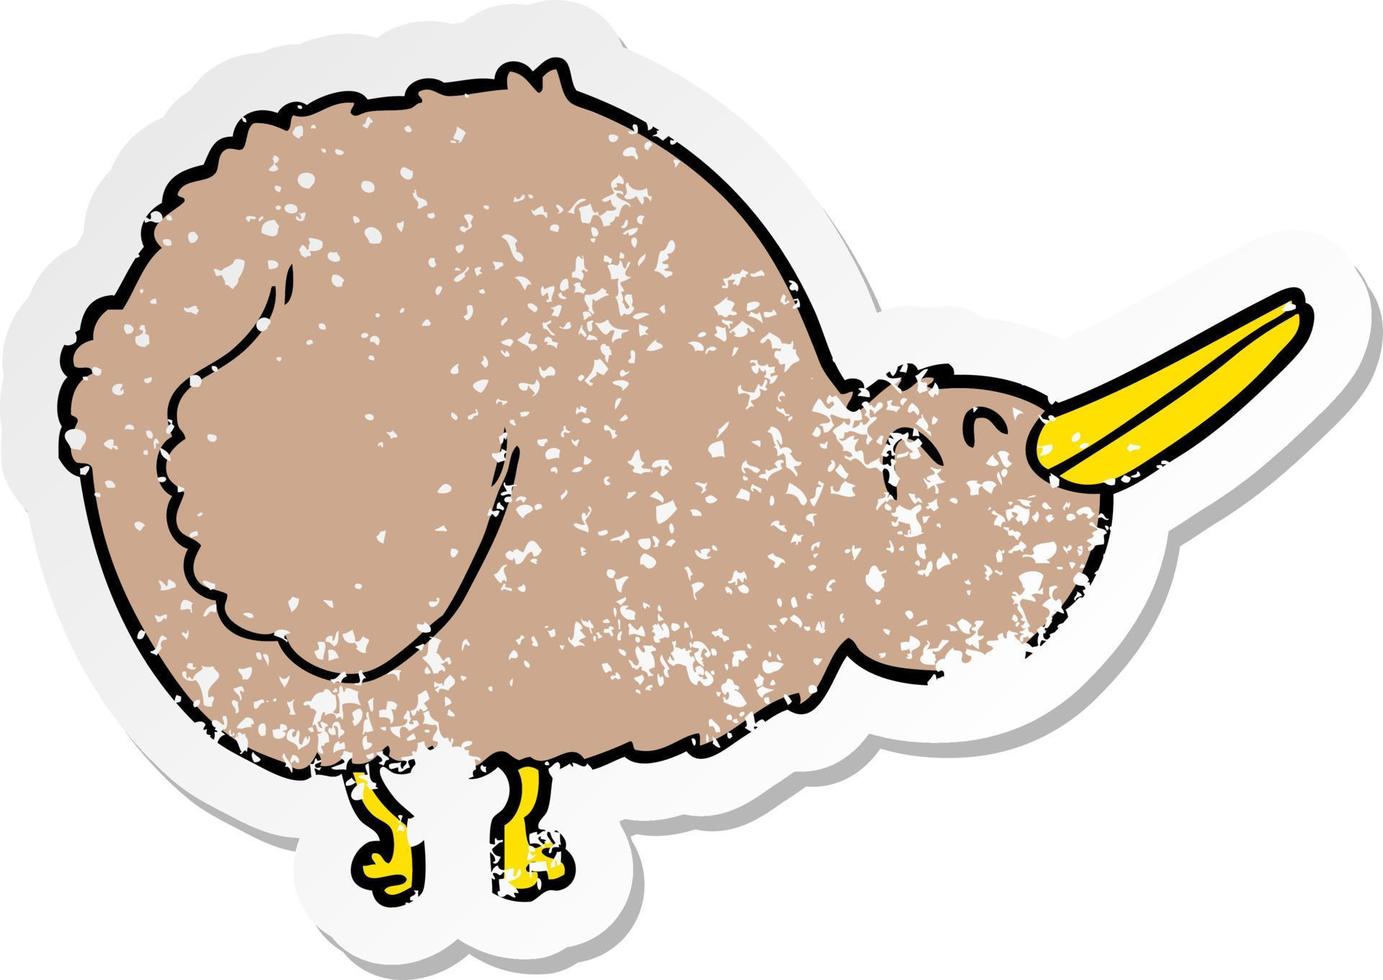 nödställd klistermärke av en tecknad kiwi fågel vektor